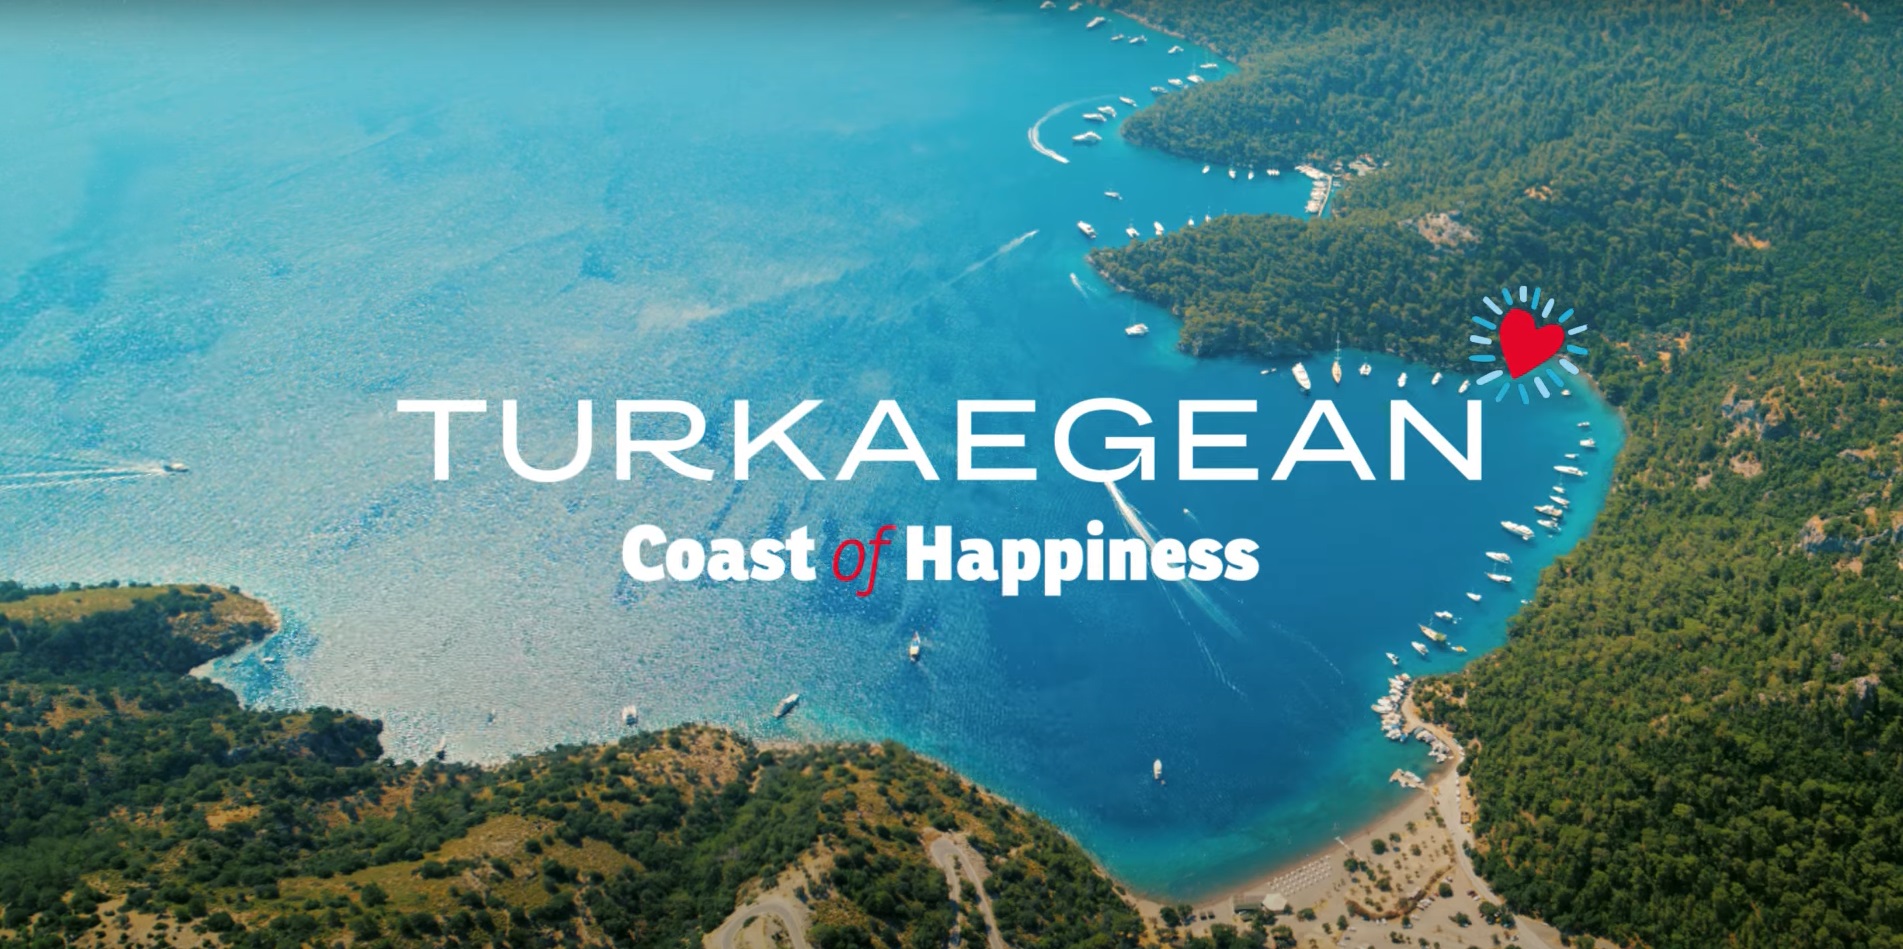 Ερώτηση Γ.Λαγού για την έγκριση της ονομασίας “Turkaegean” (τουρκικό Αιγαίο) από την Επιτροπή Δικαιωμάτων Πνευματικής Ιδιοκτησίας της ΕΕ